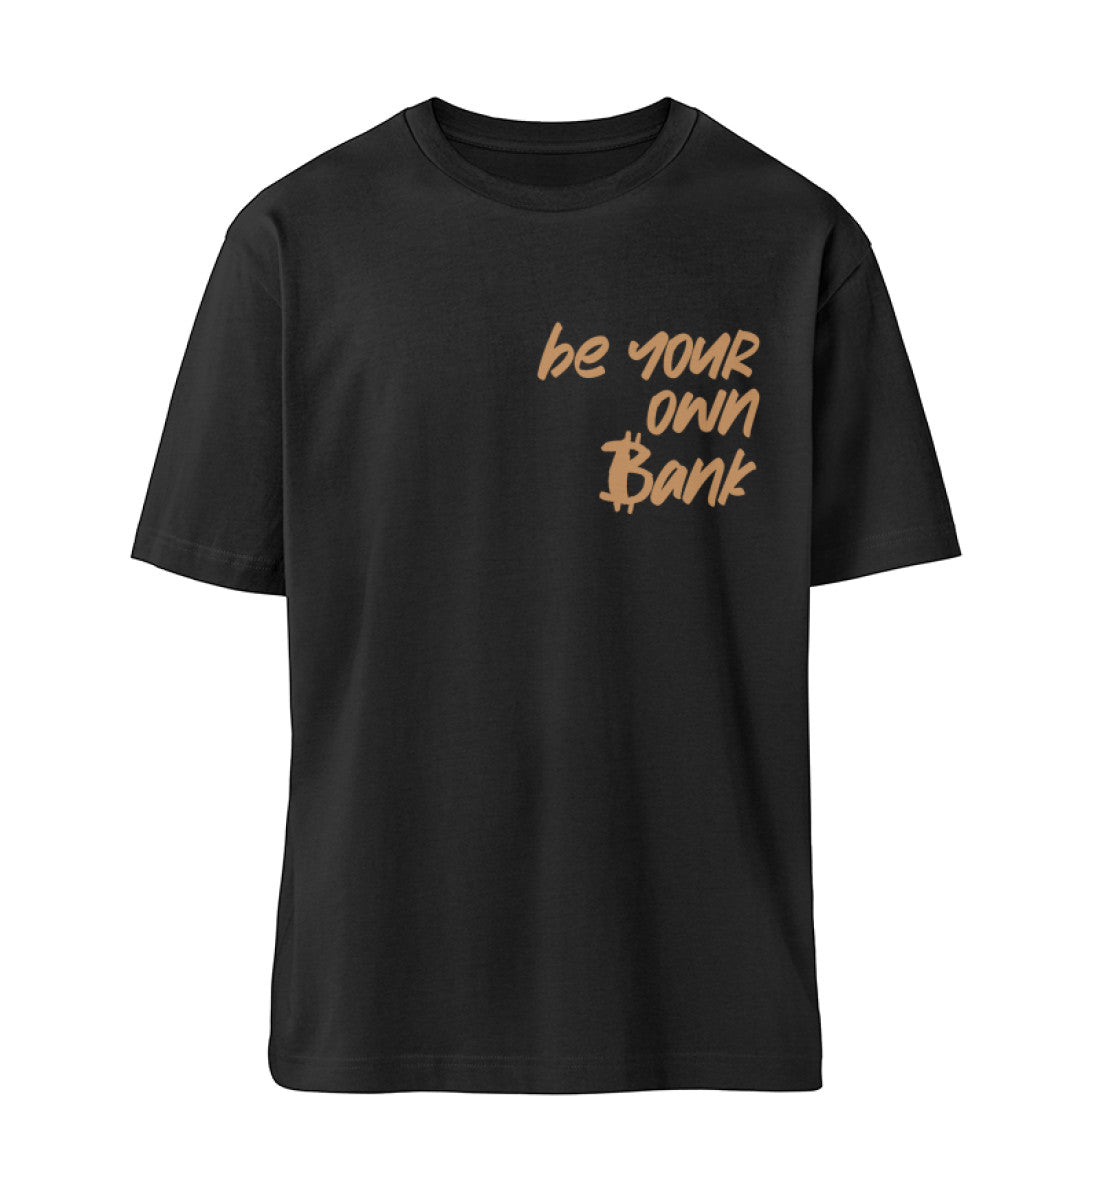 Schwarzes T-Shirt Unisex Relaxed Fit für Frauen und Männer bedruckt mit dem Design der Roger Rockawoo Kollektion Bitcoin be your own bank